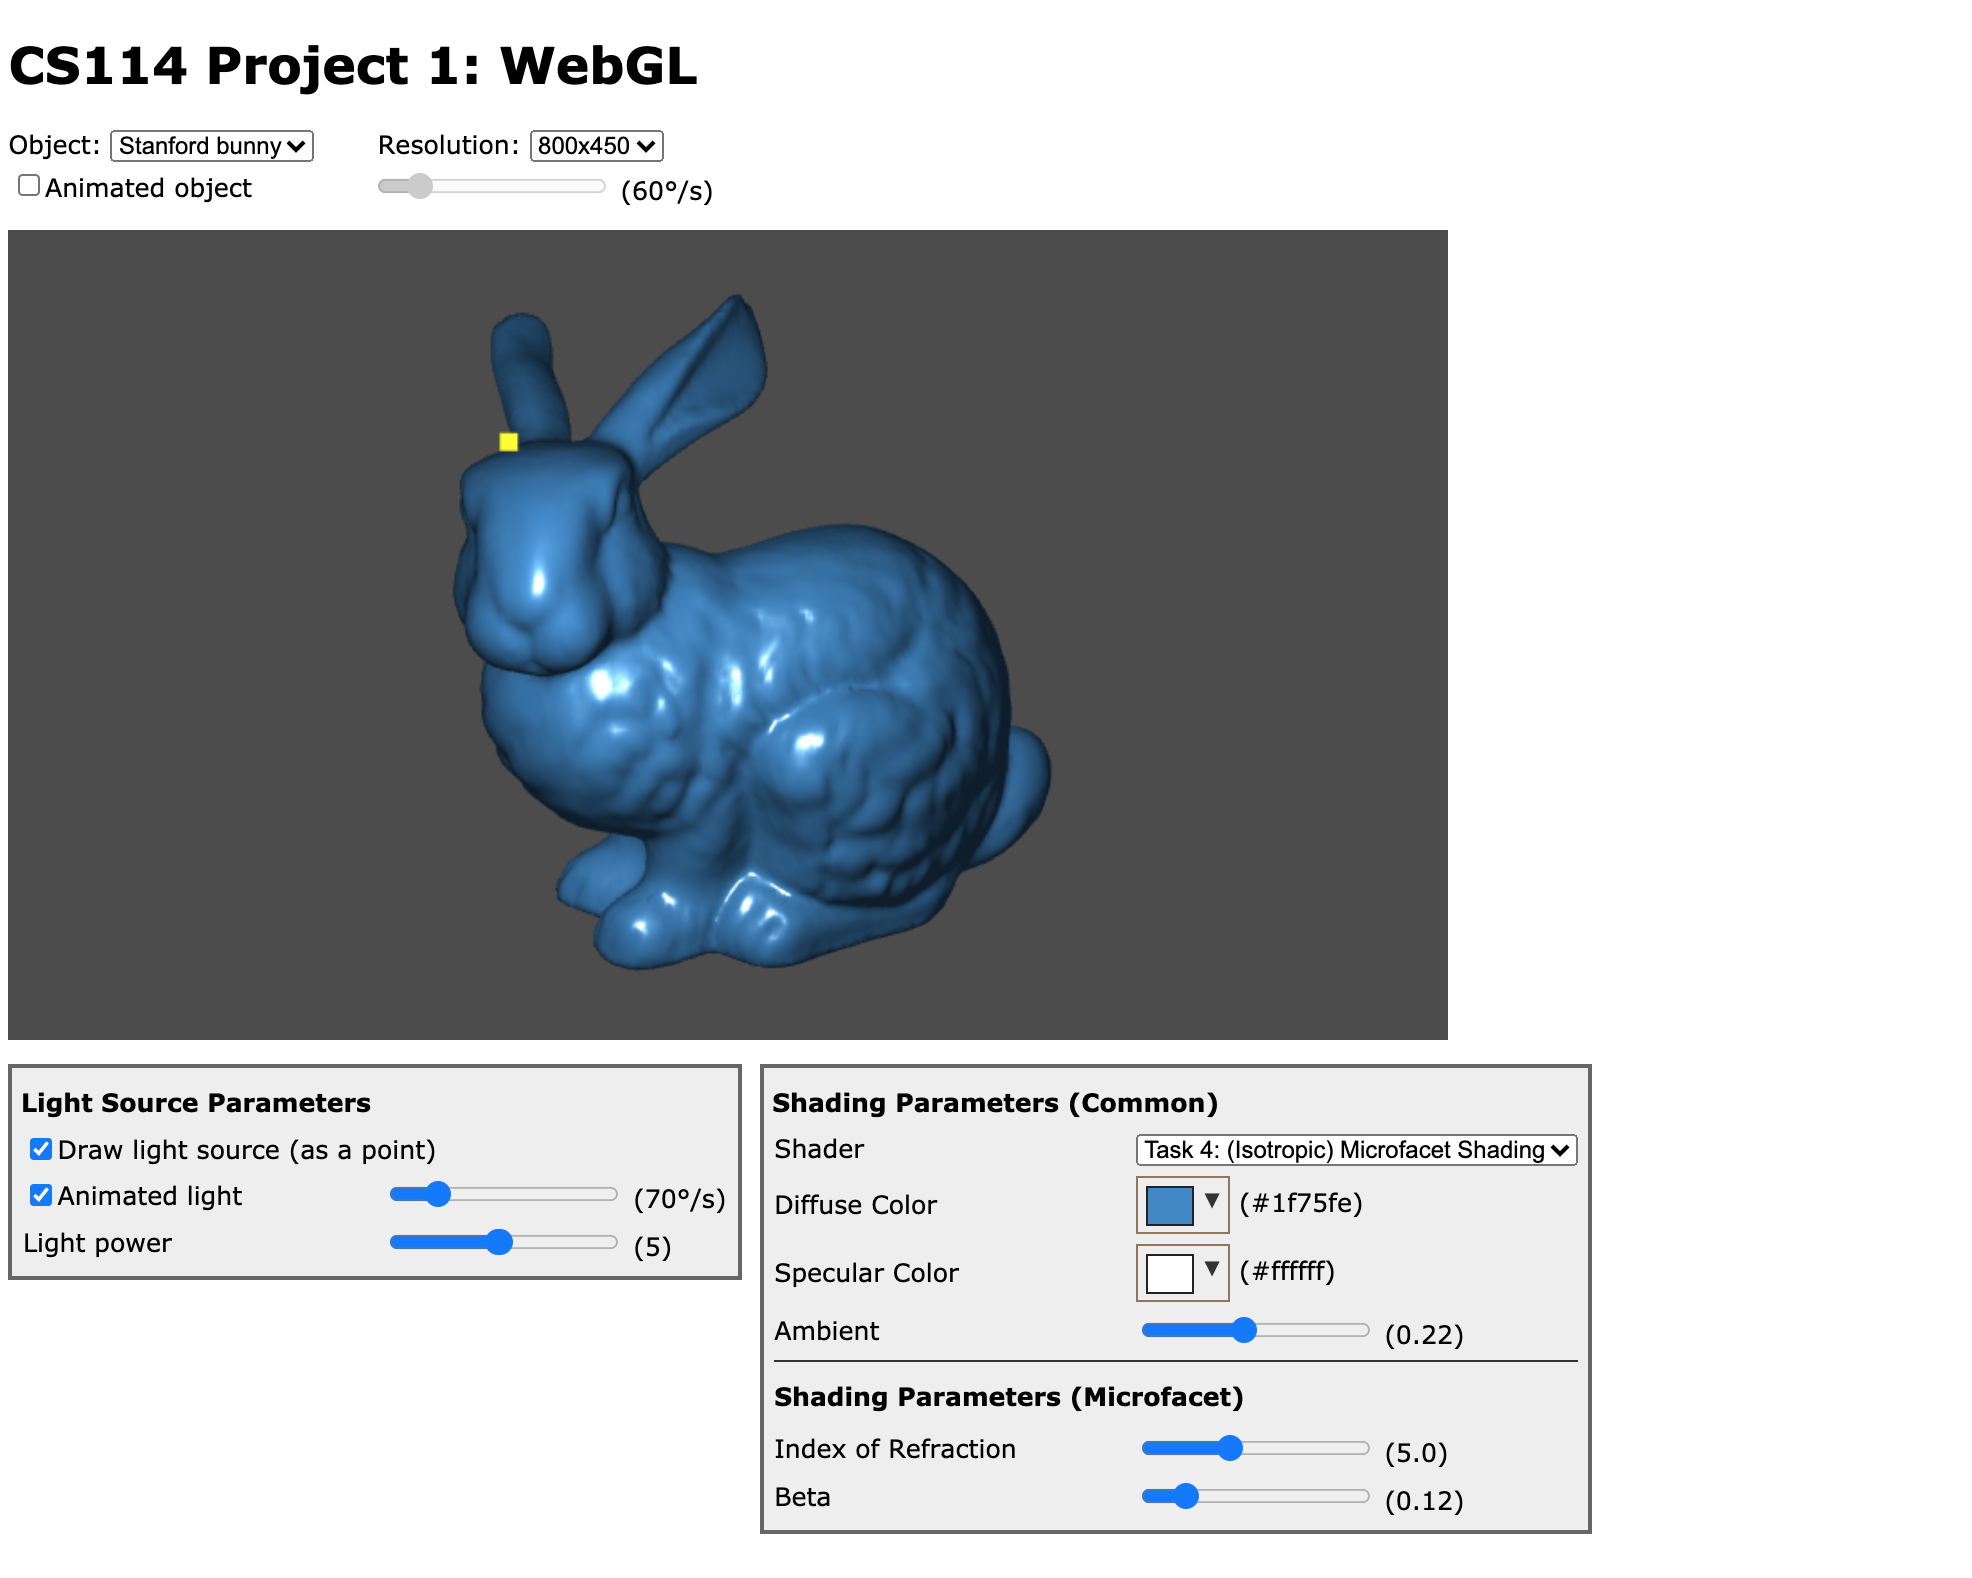 WebGL Project